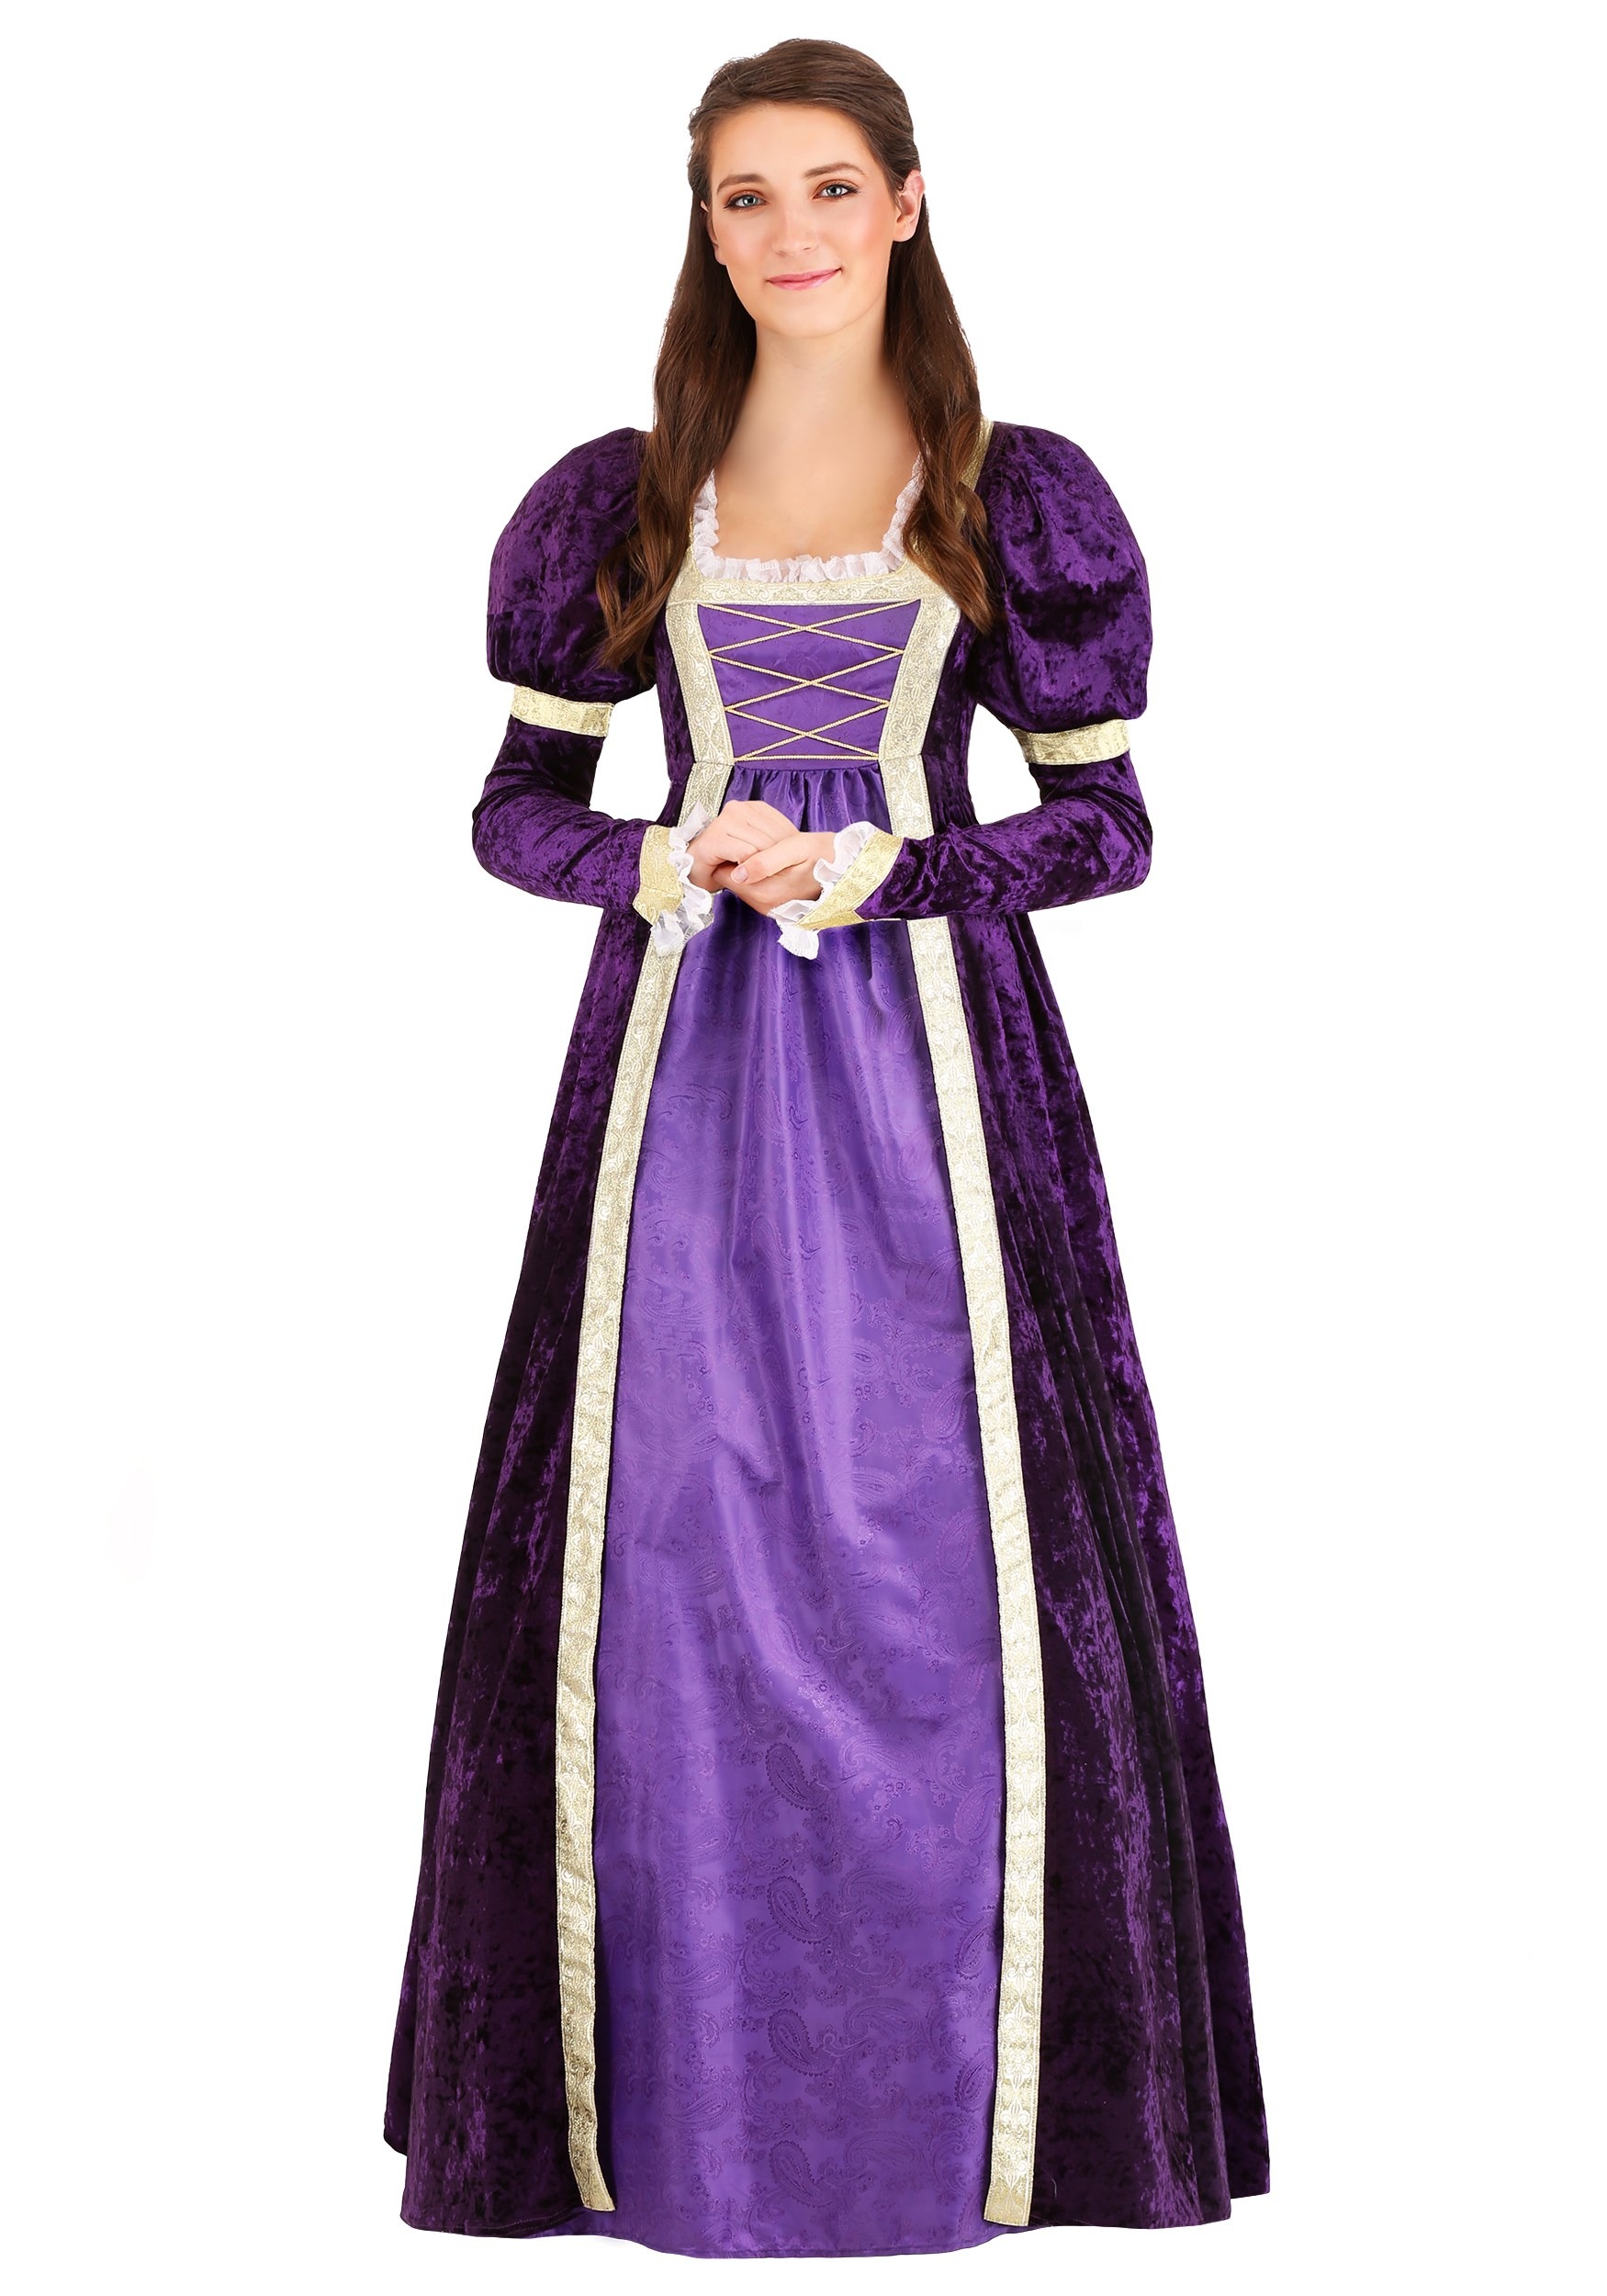 Women's Regal Maiden Fancy Dress Costume